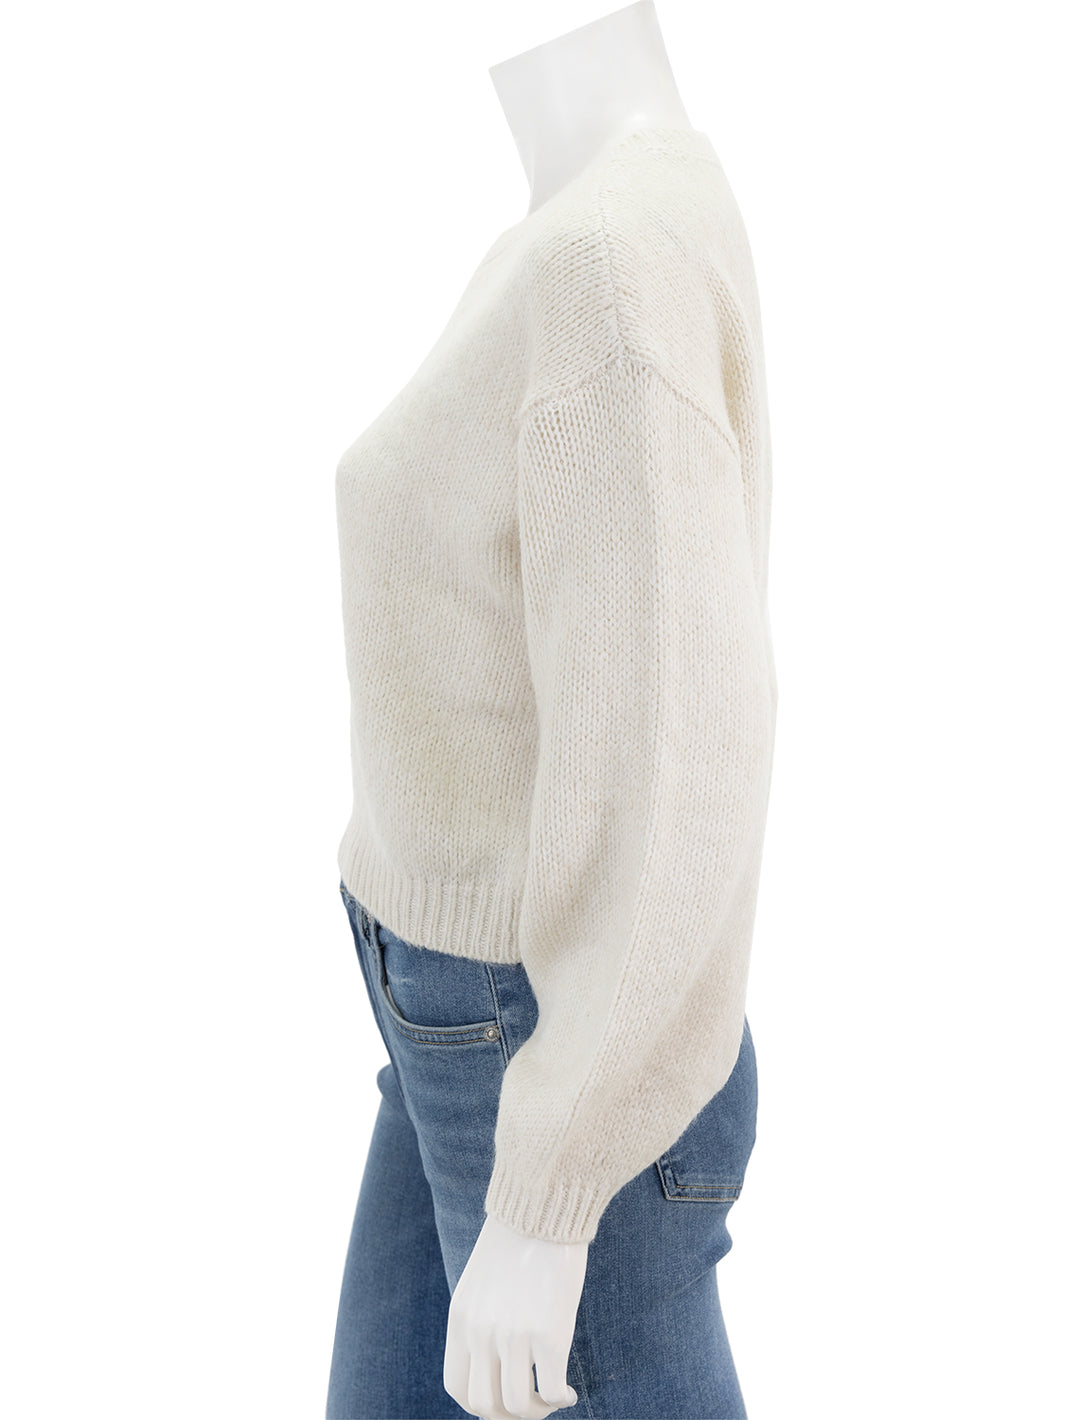 Side view of Steve Madden's colette sweater in whisper white.